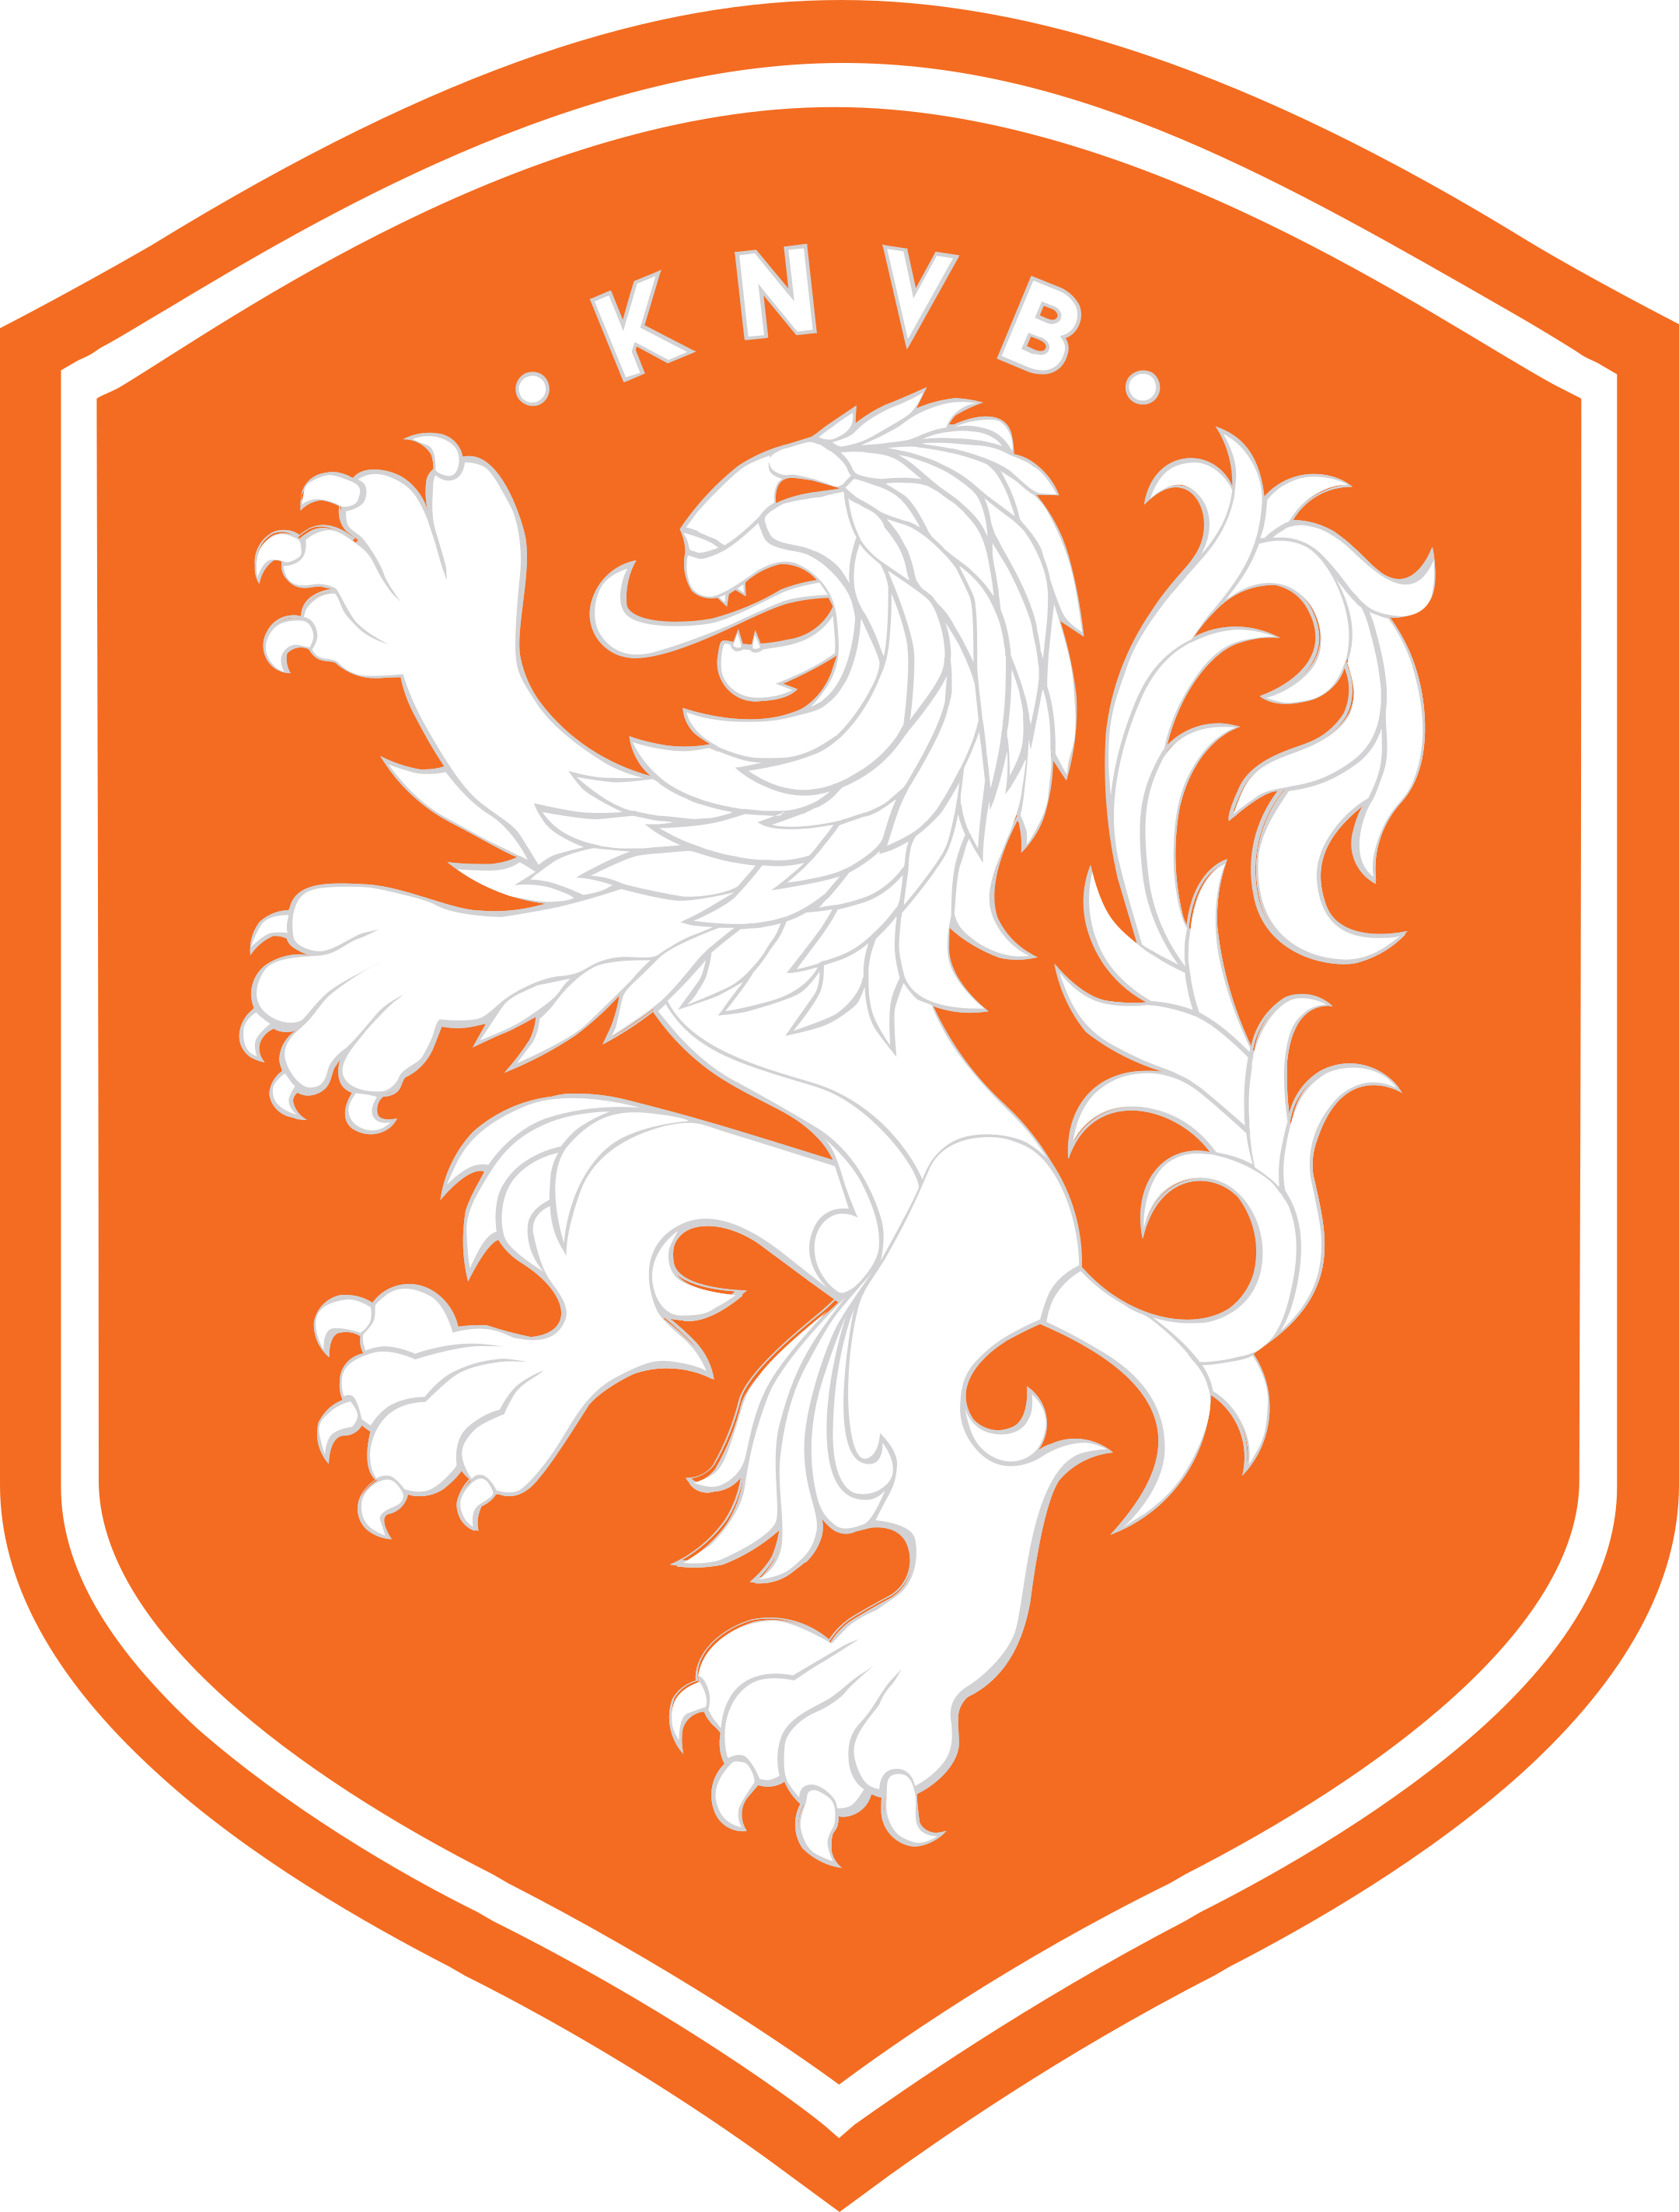 holanda netherlands football team logo 1 - KNVB - Équipe des Pays-Bas de Football Logo